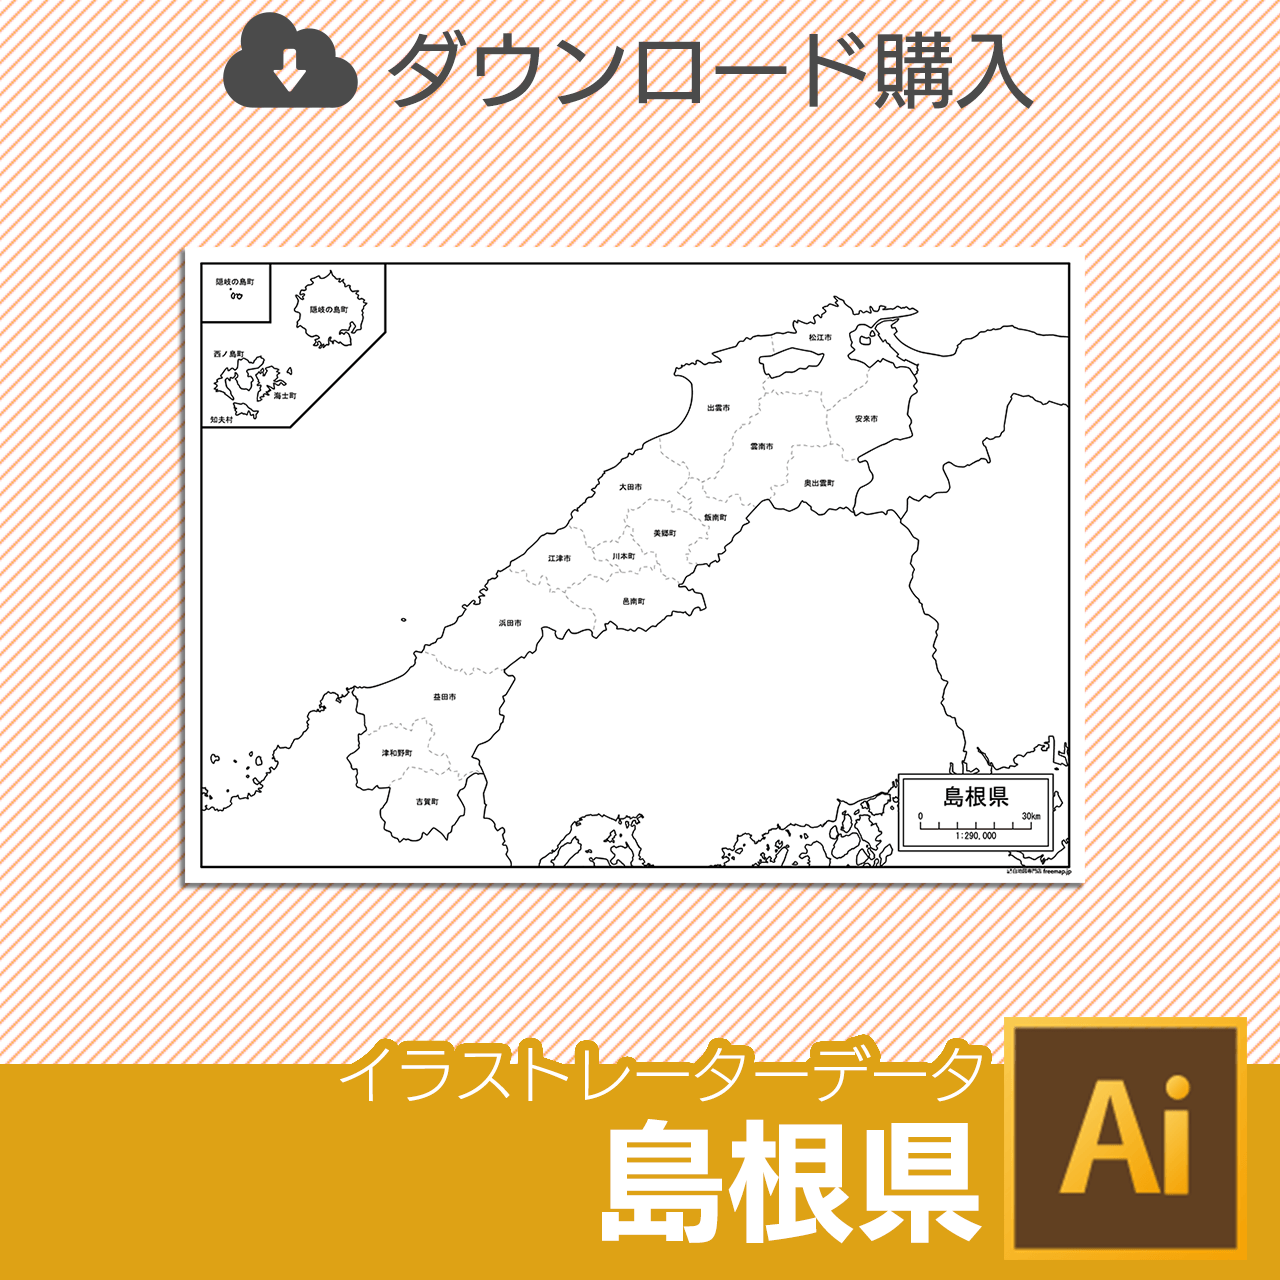 島根県のaiデータのサムネイル画像